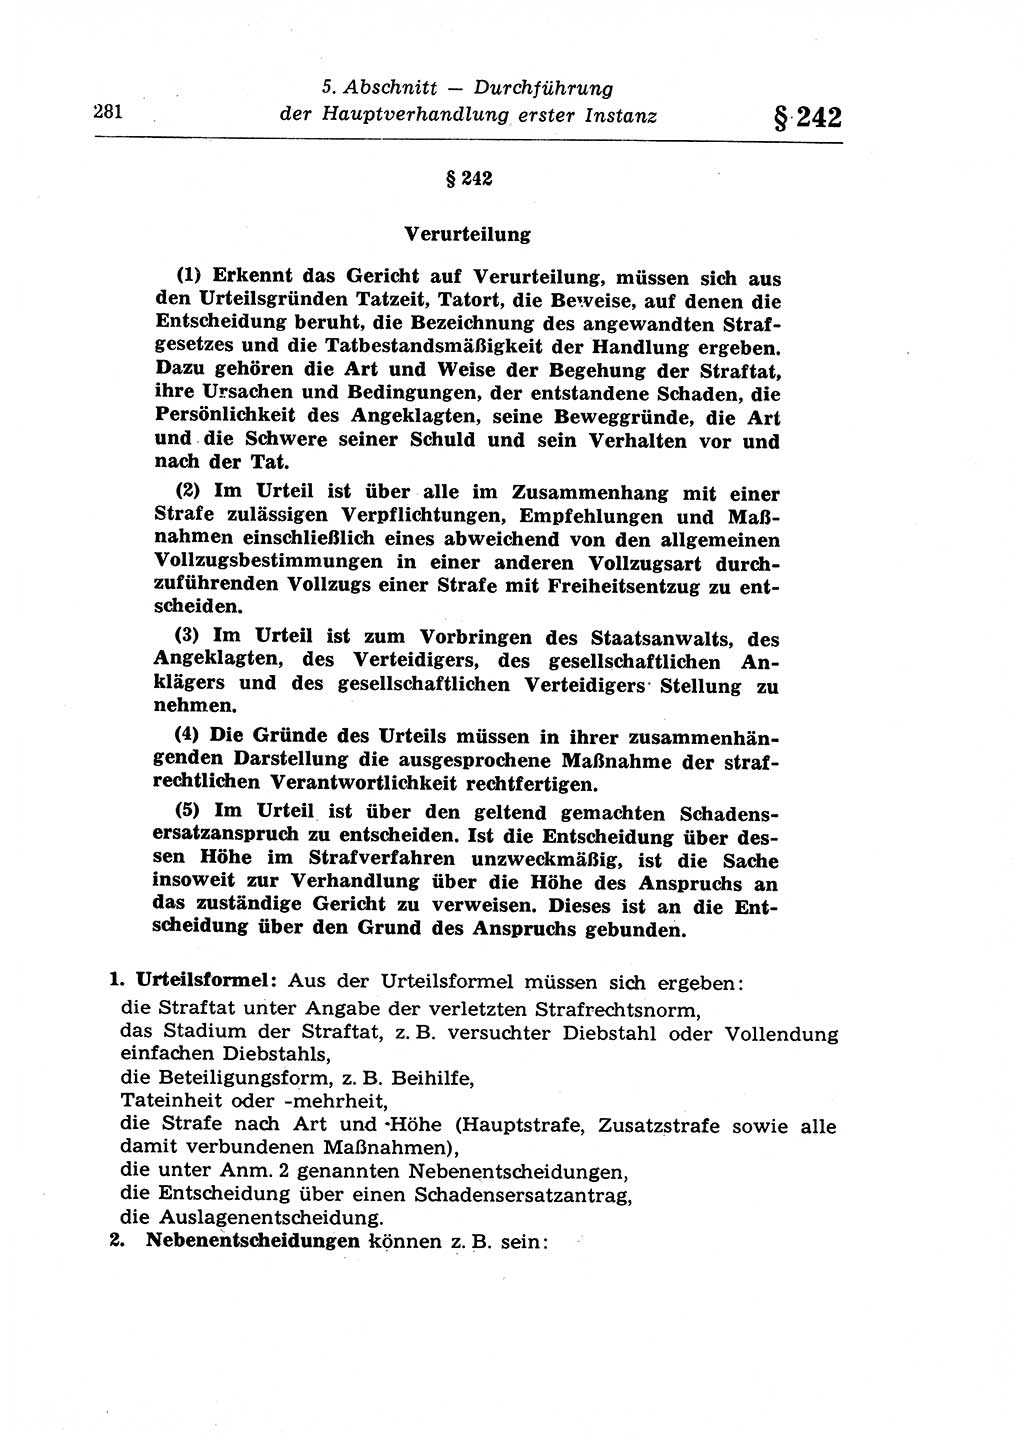 Strafprozeßrecht der DDR (Deutsche Demokratische Republik), Lehrkommentar zur Strafprozeßordnung (StPO) 1968, Seite 281 (Strafprozeßr. DDR Lehrkomm. StPO 19688, S. 281)